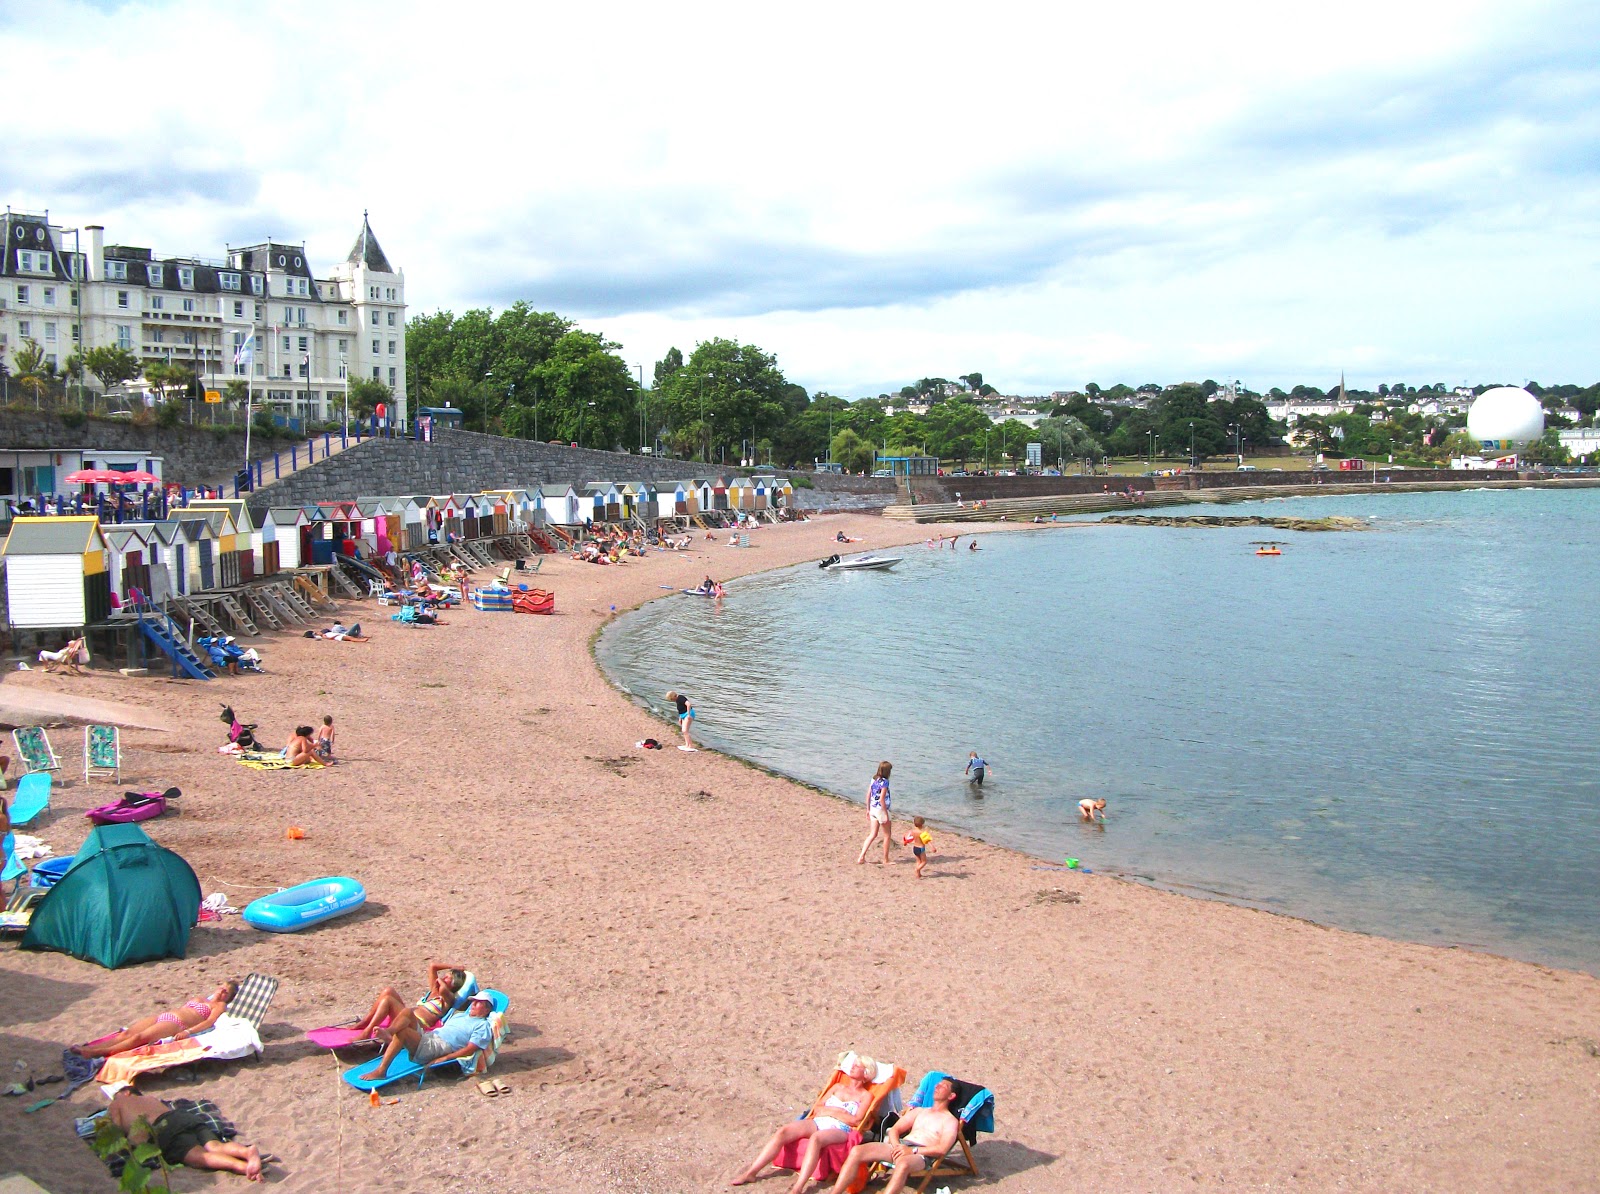 Corbyn beach'in fotoğrafı parlak kum yüzey ile